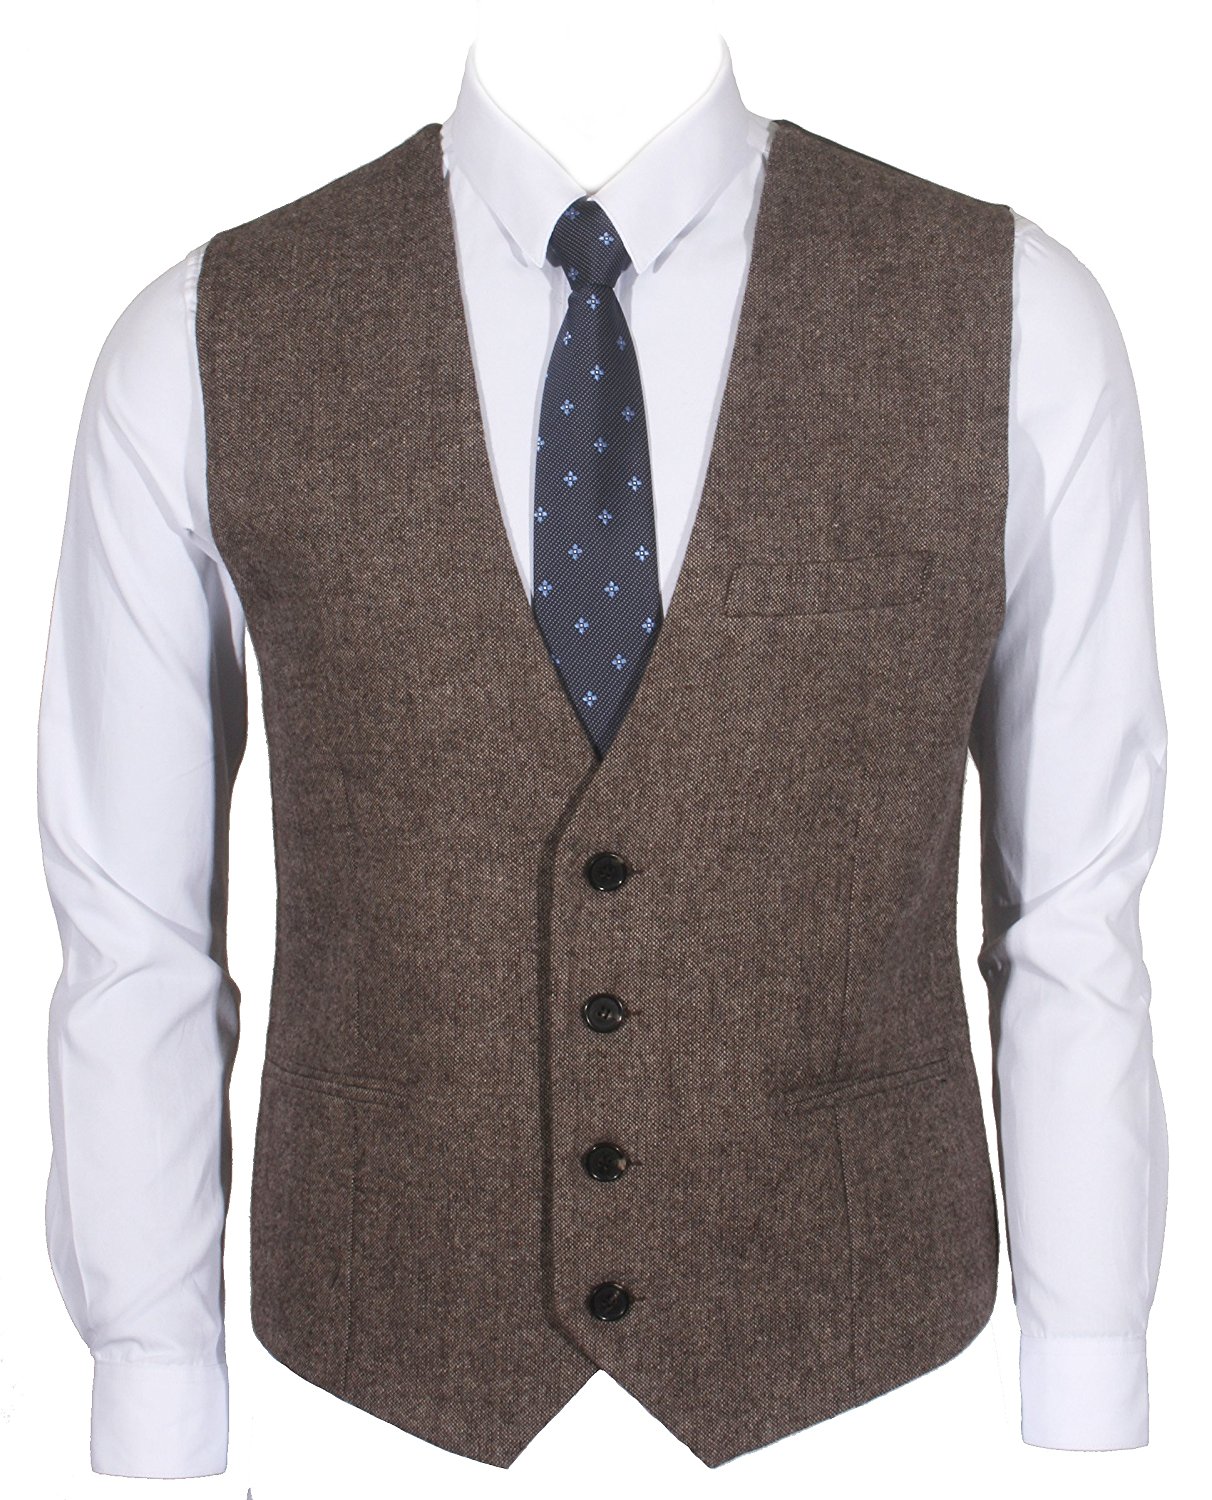 2019 Country Groom Vests Farm Wool Herringbone Tweed Vests Custom Made Made Made British Style Groom Vest Slim Fit Mens Suit Suit Vest Waistcoat Dress